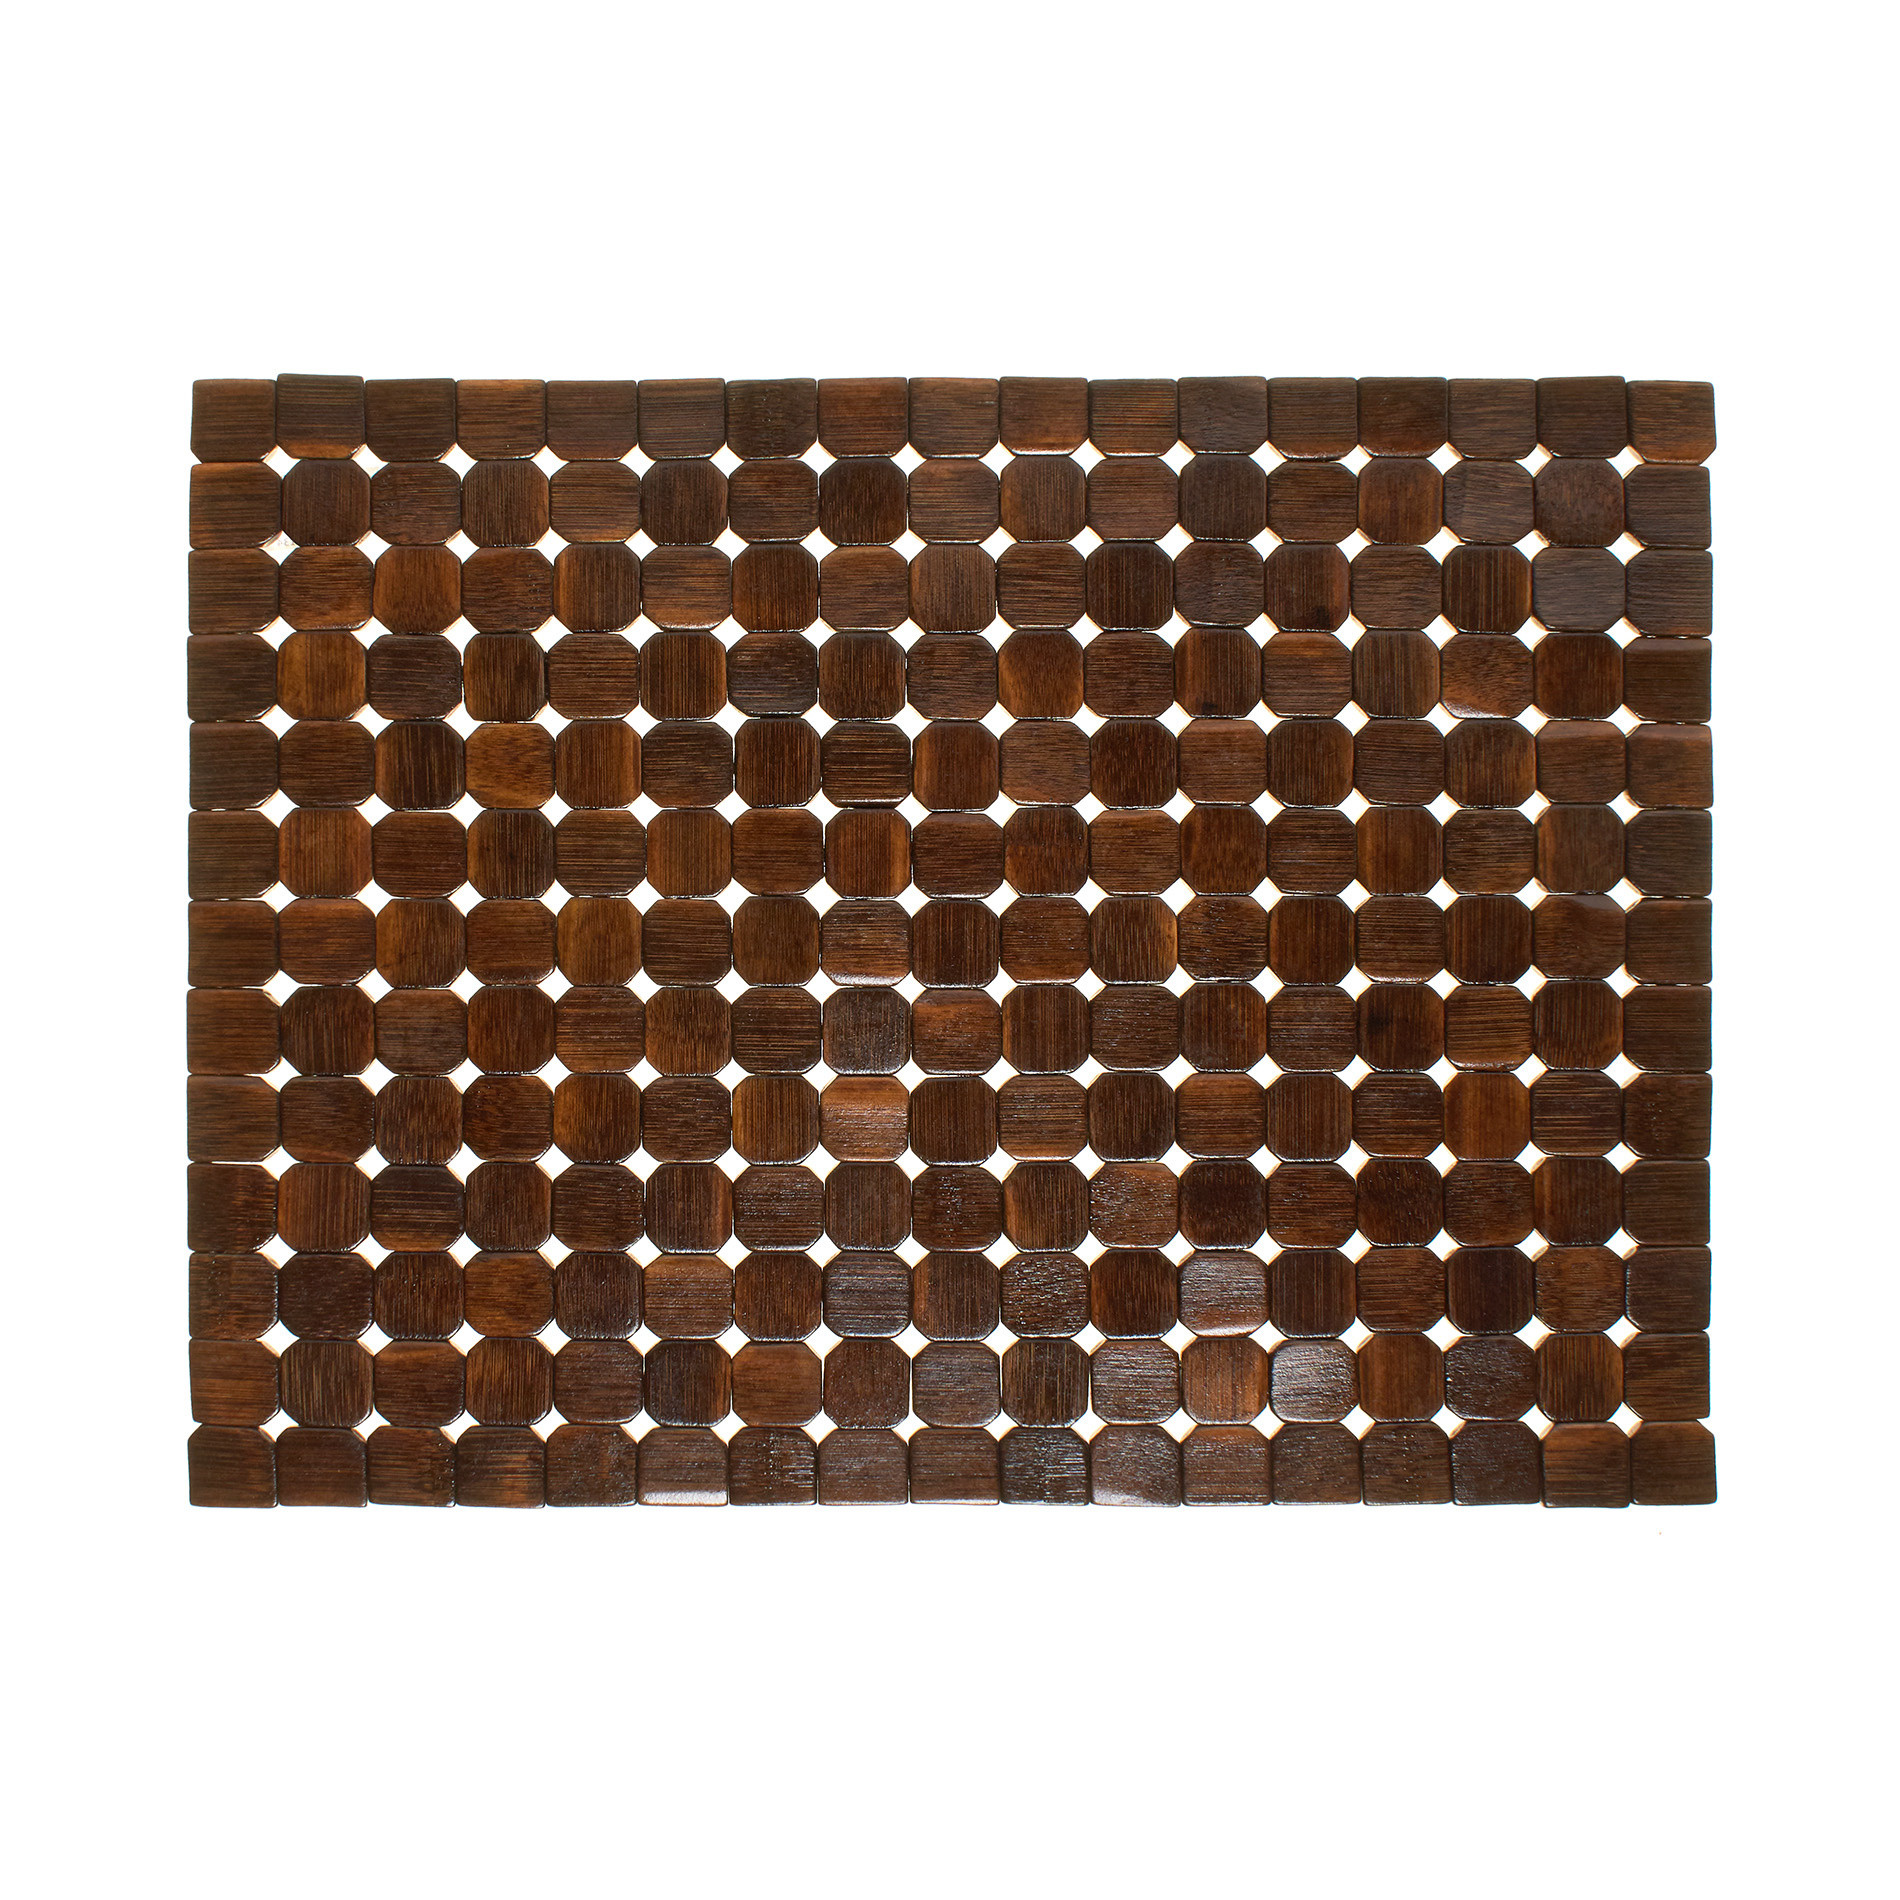 Расписной бамбуковый коврик для столовых приборов Coincasa, темно-коричневый цена и фото